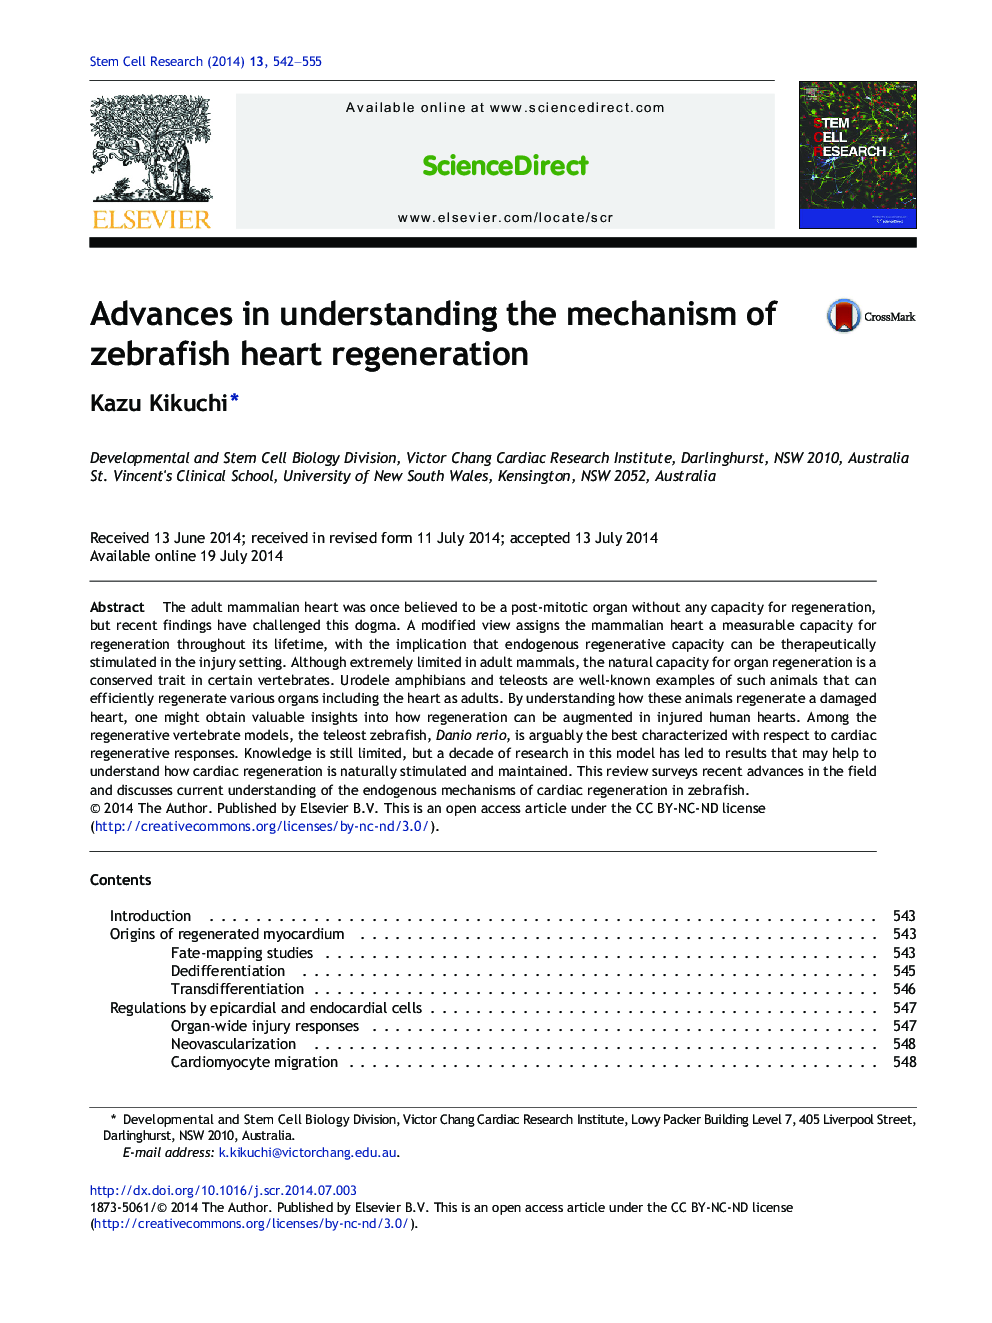 Advances in understanding the mechanism of zebrafish heart regeneration